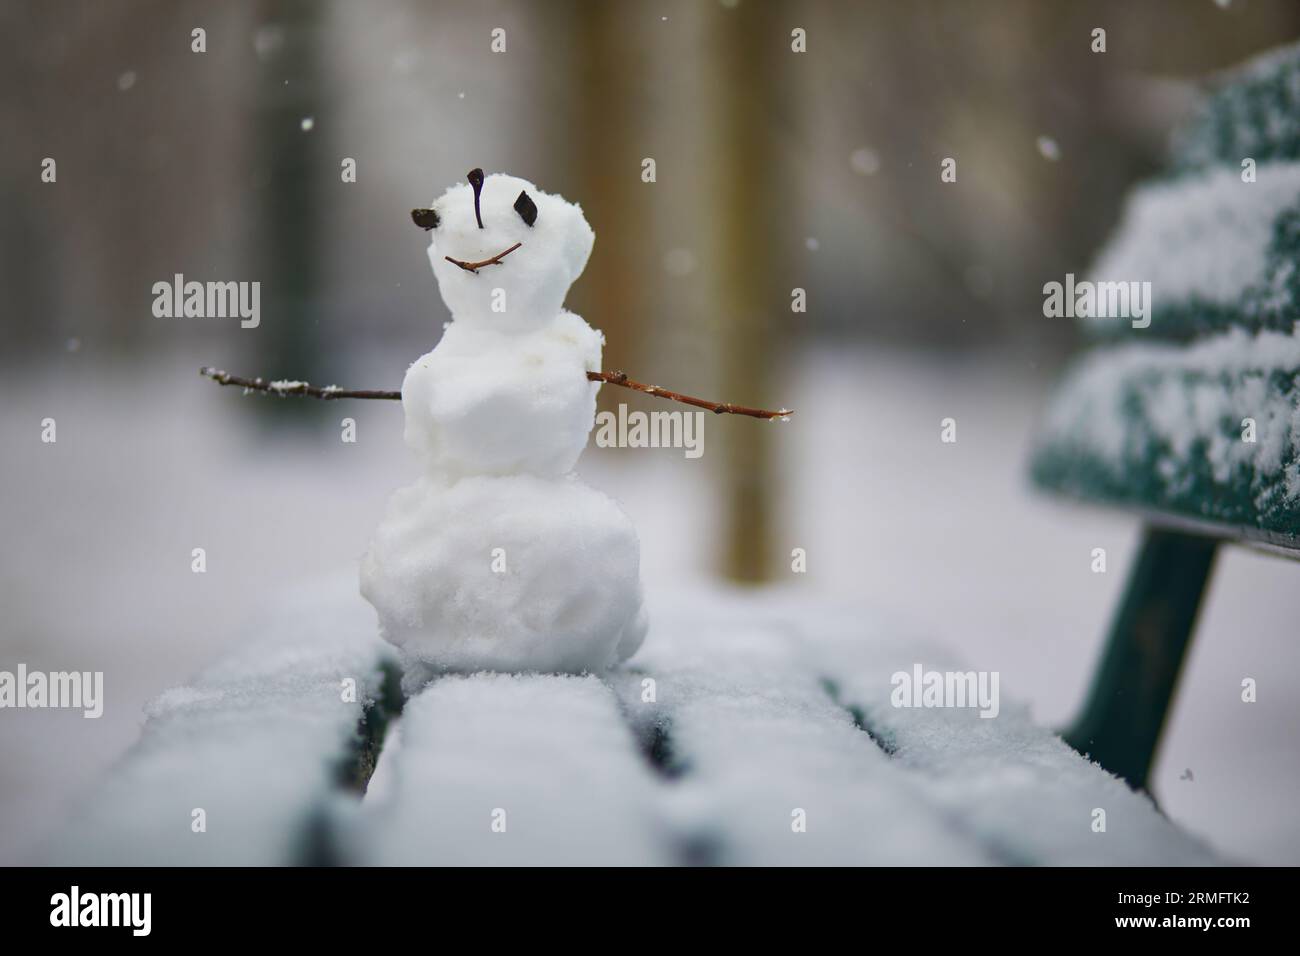 Kleiner Schneemann mit glücklichem Gesicht auf einer mit Schnee bedeckten Bank. Winteraktivitäten mit Kindern. Kaltes, schneebedecktes Wetter Stockfoto